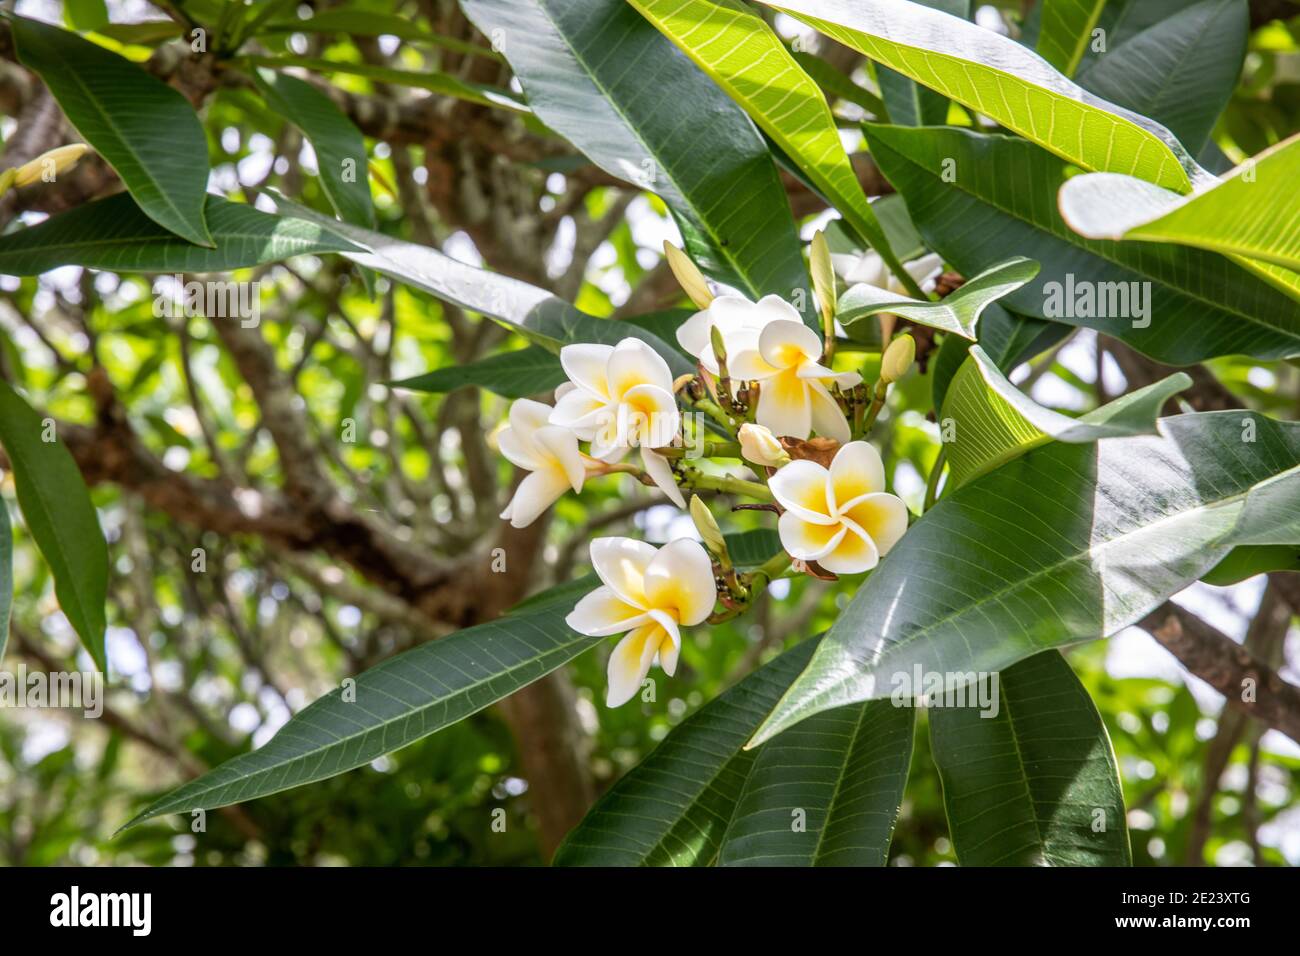 Plumeria frangipani albero a Sydney durante l'estate con gemme e fiori bianchi gialli, questi alberi sono molto popolari nei giardini domestici a Sydney, Australia Foto Stock